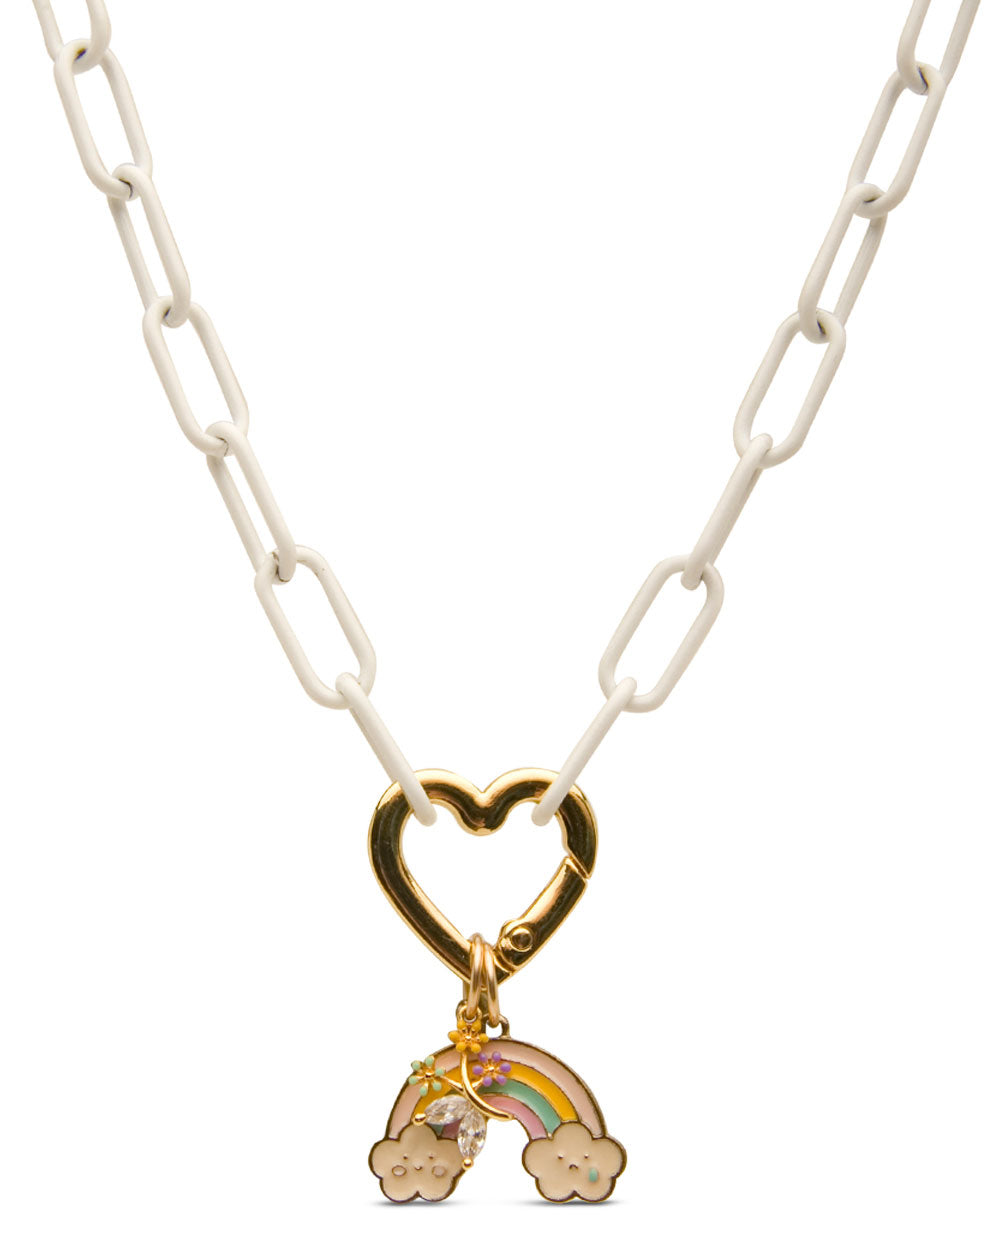 Enamel Chain Link Heart Necklace